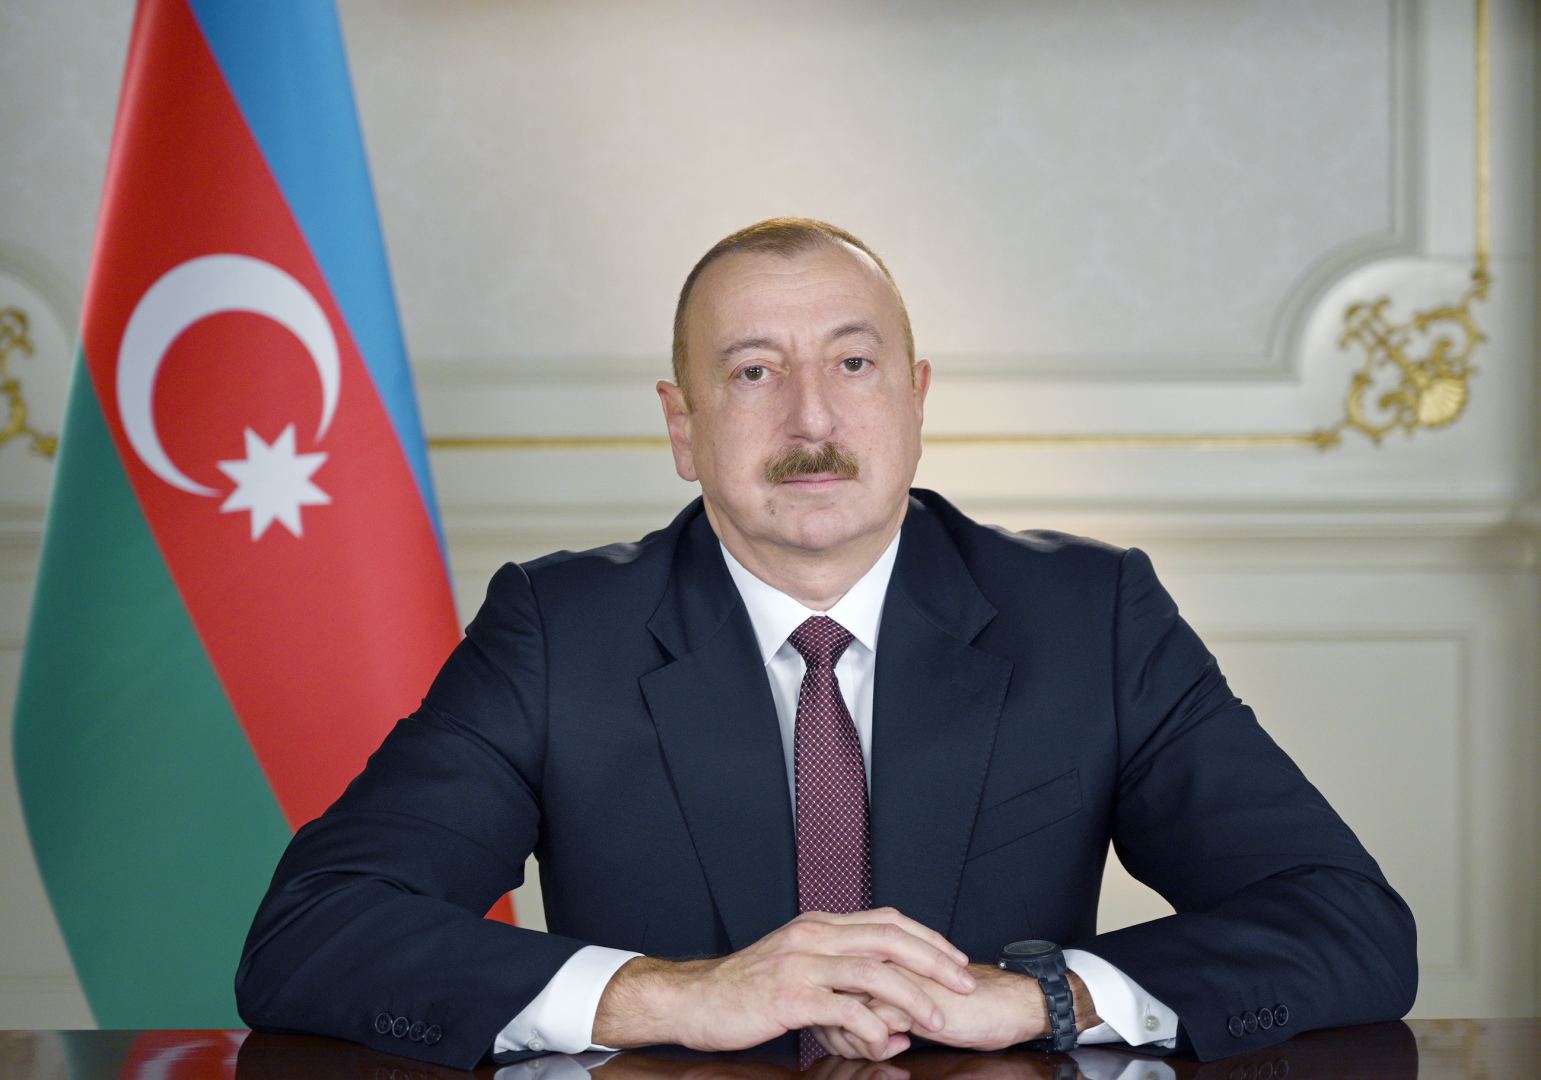 Prezident İlham Əliyev: Azərbaycan dinlərarası həmrəyliyin və əməkdaşlığın mövcud olduğu nadir məkanlardandır